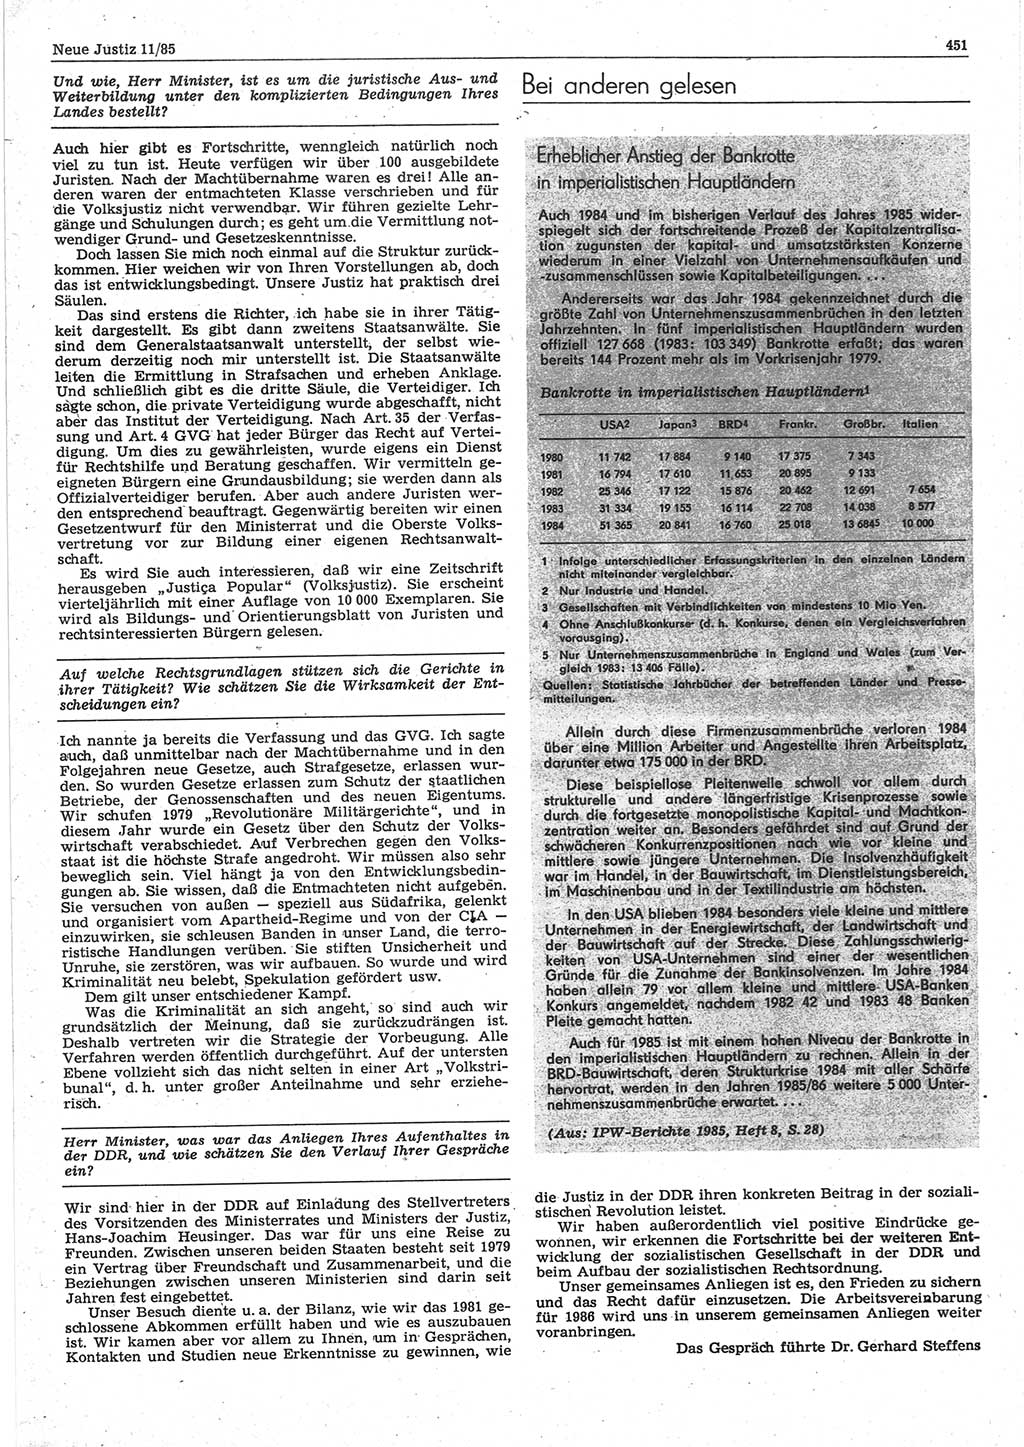 Neue Justiz (NJ), Zeitschrift für sozialistisches Recht und Gesetzlichkeit [Deutsche Demokratische Republik (DDR)], 39. Jahrgang 1985, Seite 451 (NJ DDR 1985, S. 451)